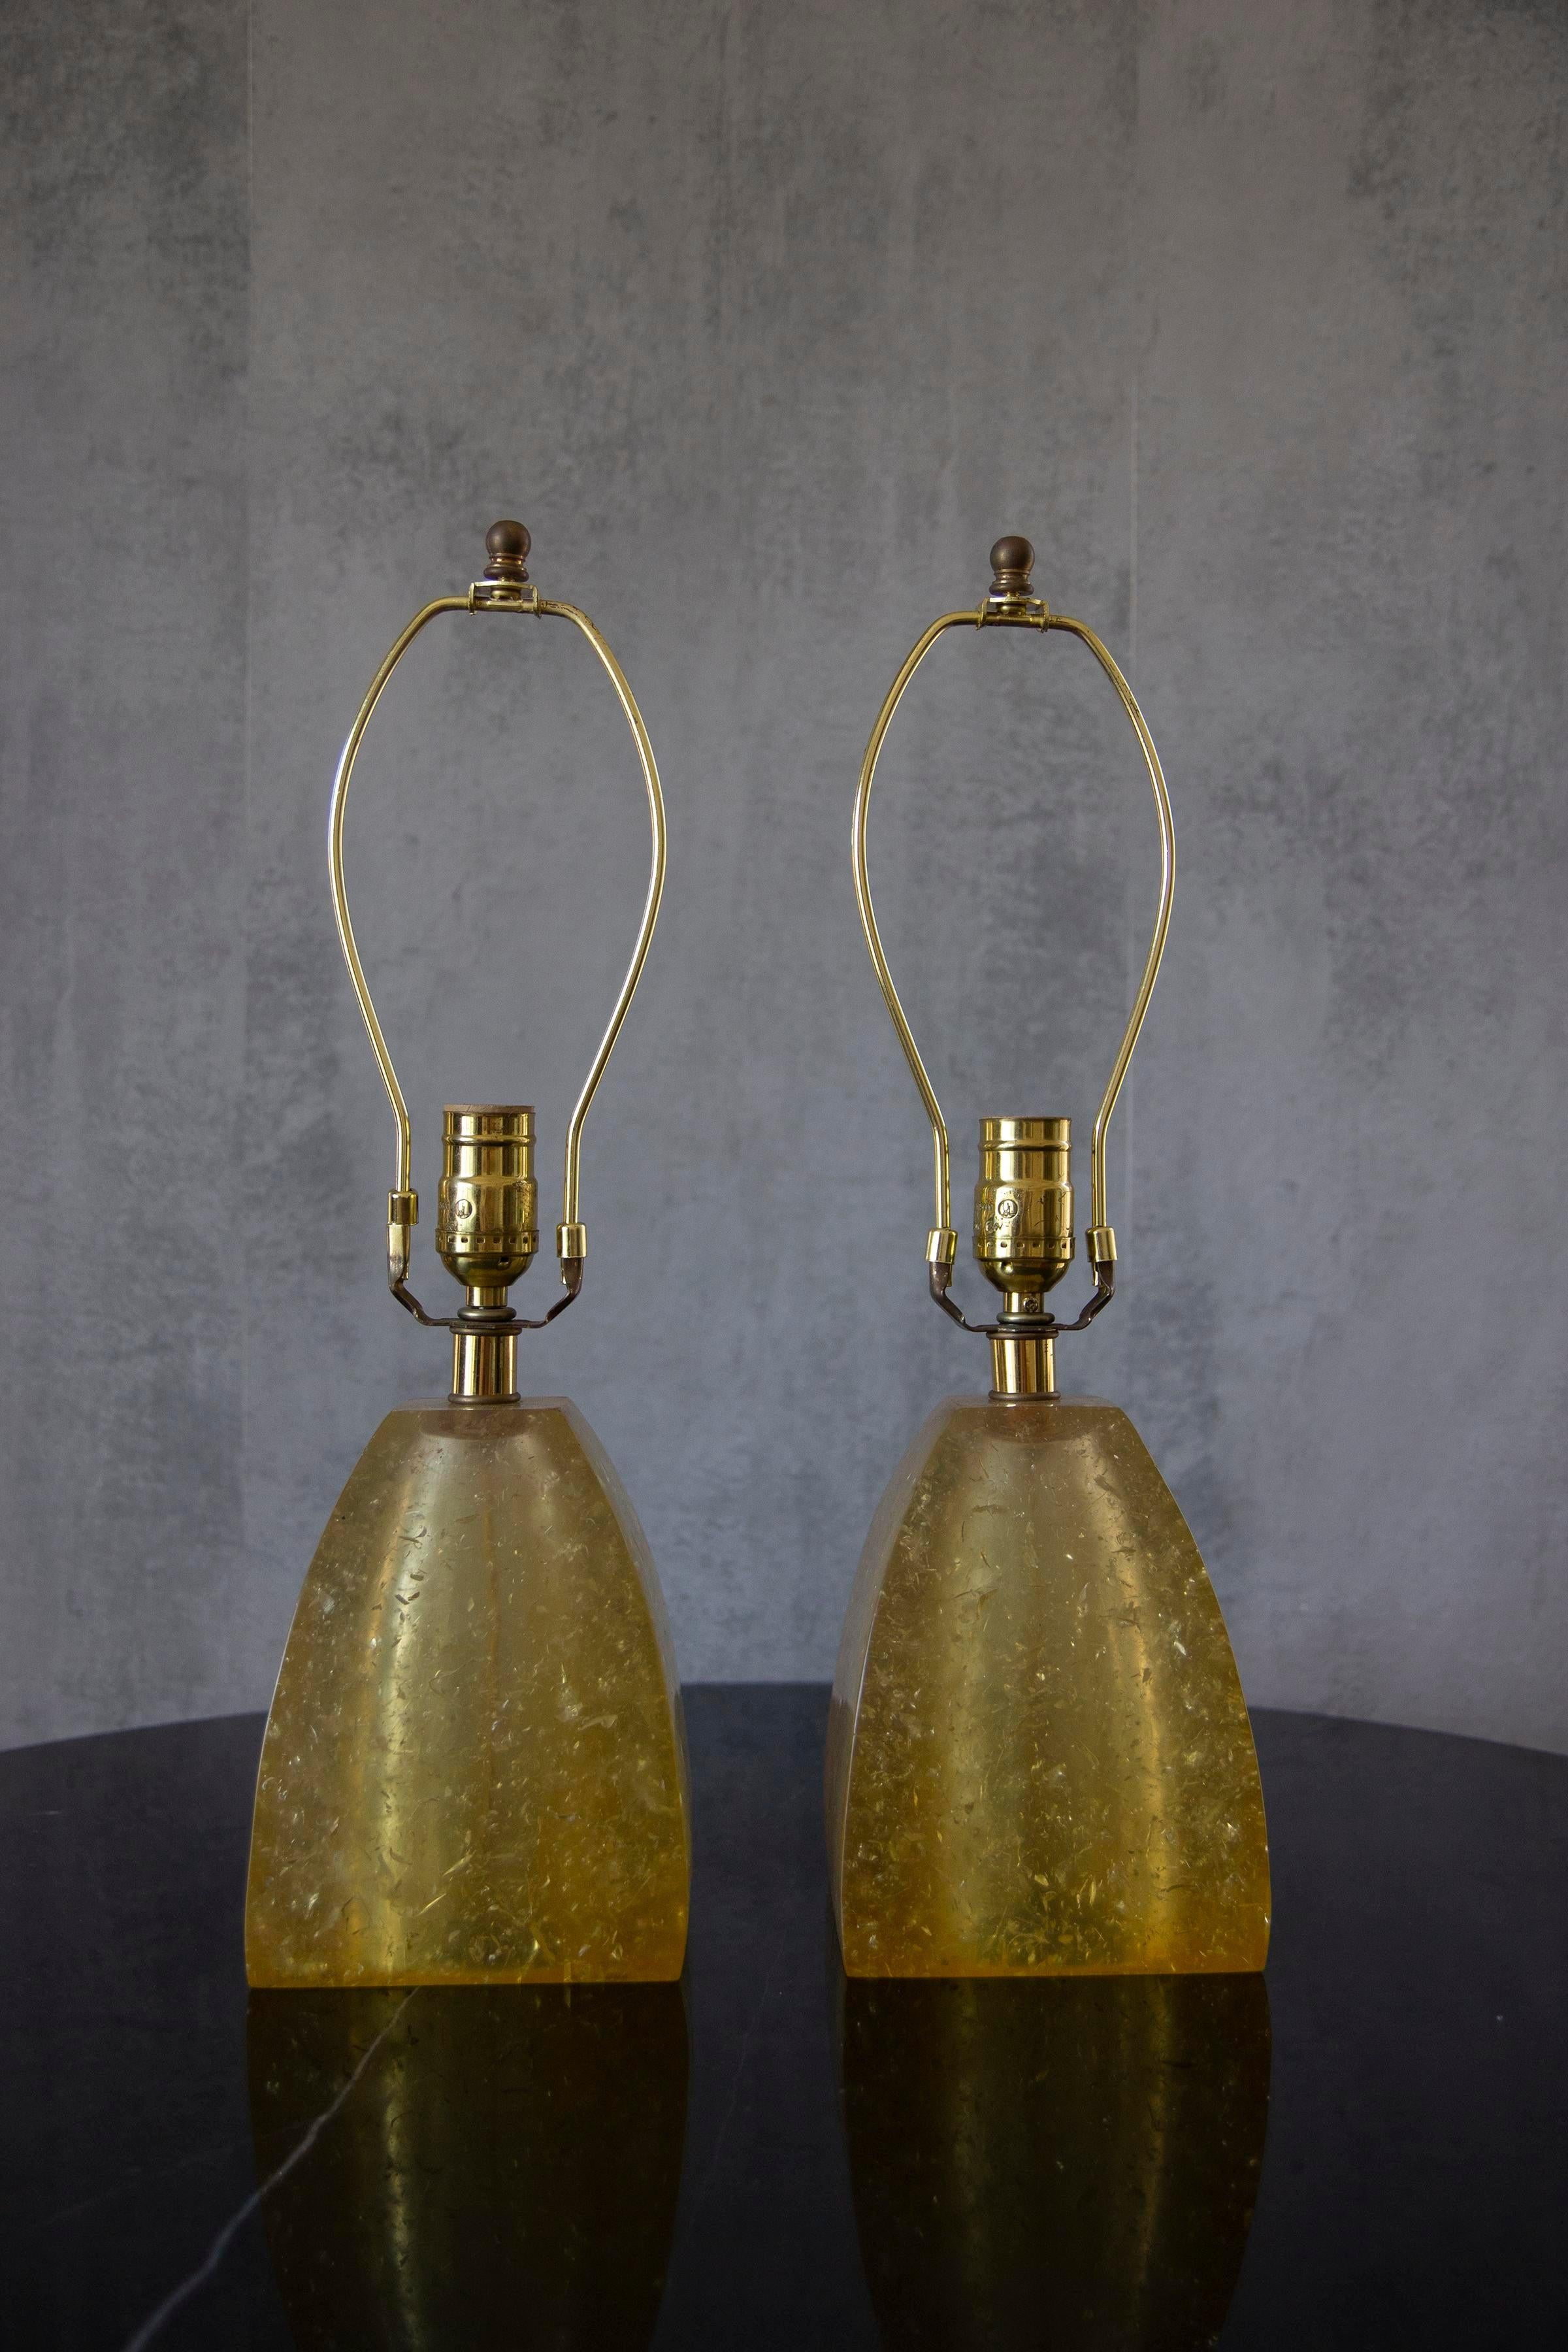 Neu verdrahtetes Paar goldener Fractal-Harz-Mantellampen. 
Elegant und perfekt, um etwas Farbe in Ihren Wohnraum zu bringen.